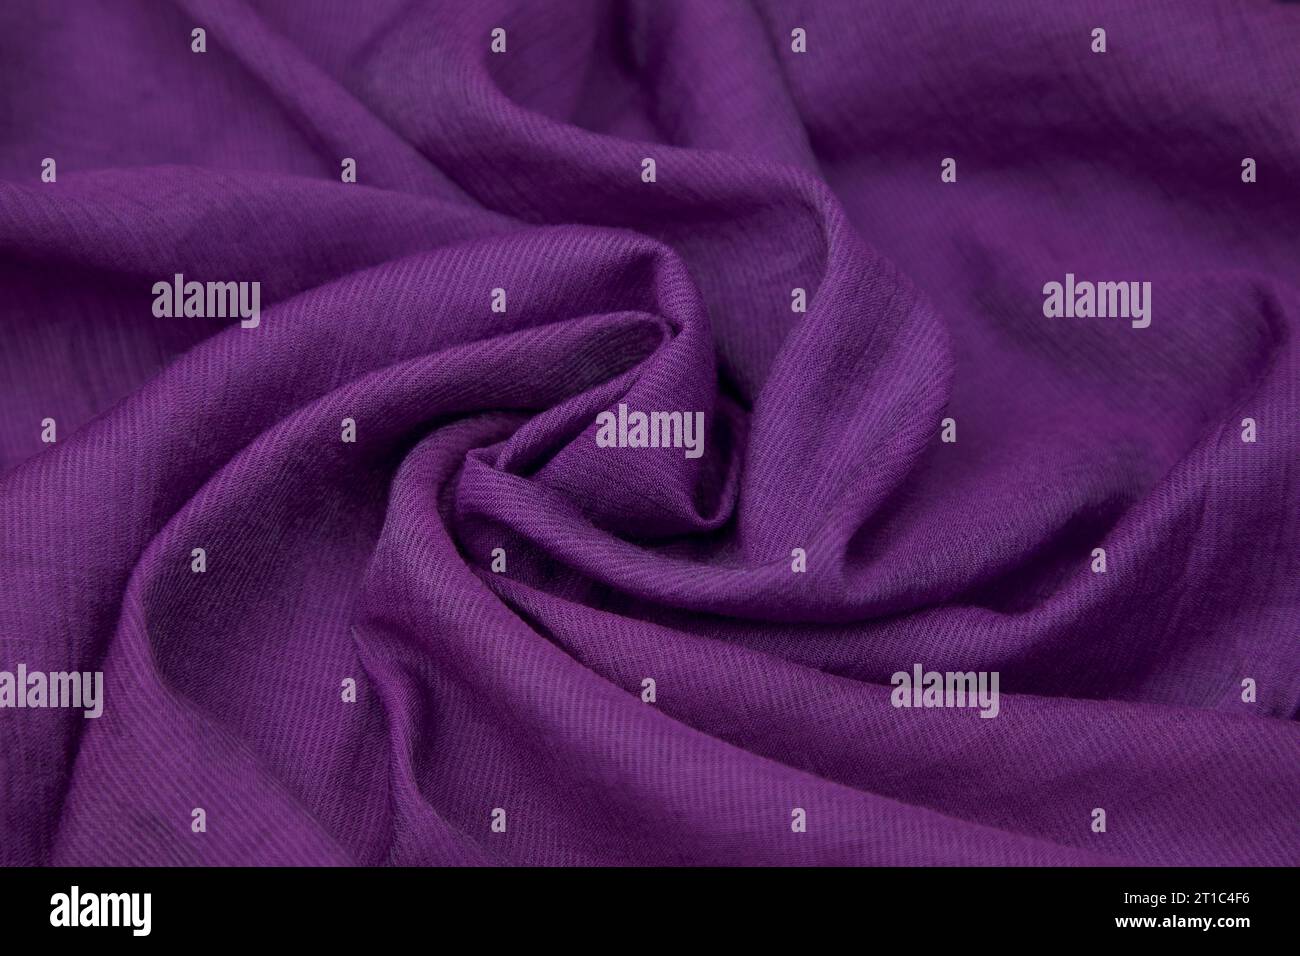 Questa immagine stock di alta qualità è caratterizzata da un vivace tessuto viola con una delicata lucentezza Foto Stock